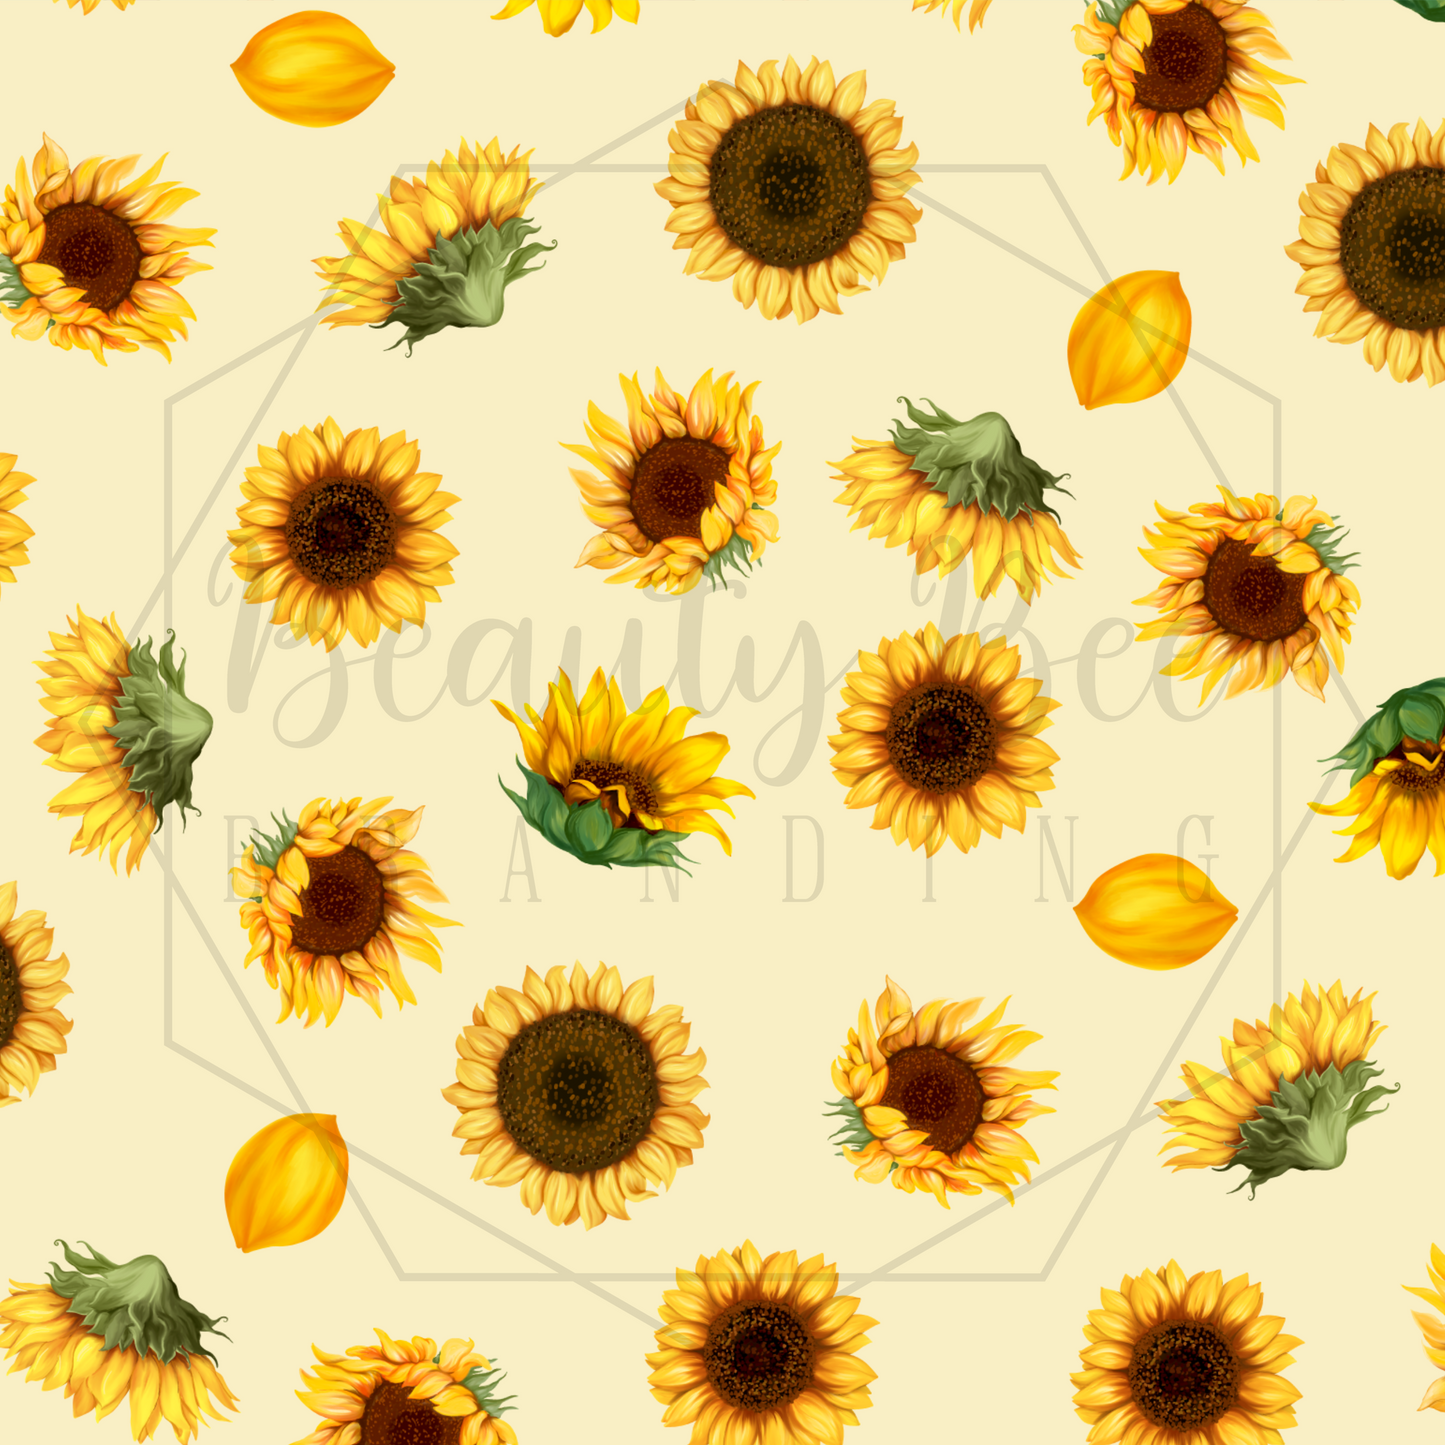 Small Sunflowers SEAMLESS PATTERN